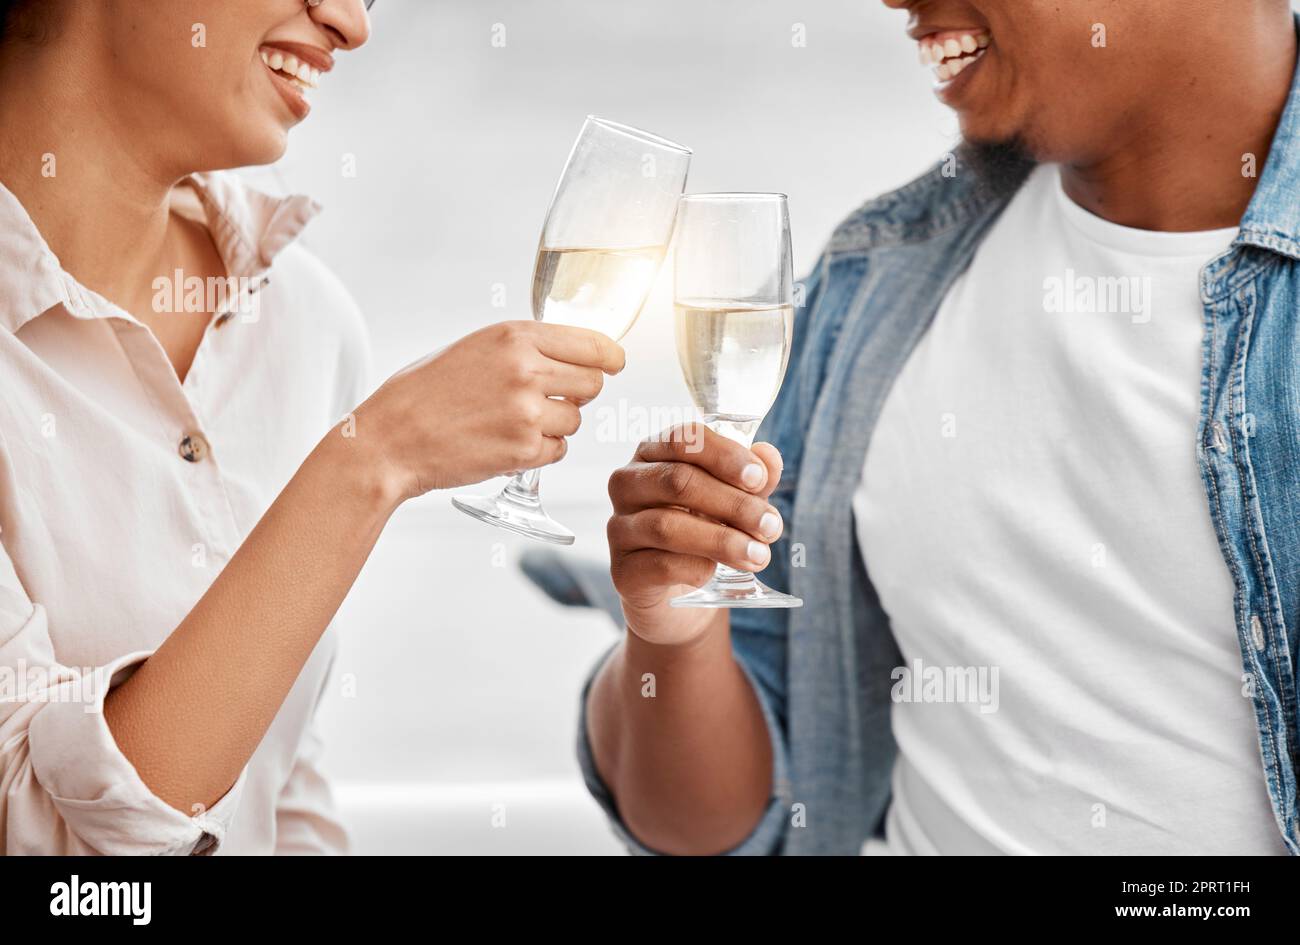 Festeggiate, brindate e coppie con champagne per anniversario, data o vacanza di lusso insieme. Amore, saluti e mani felici di uomo e donna che tengono un bicchiere di vino per gioia, bere ed eventi Foto Stock